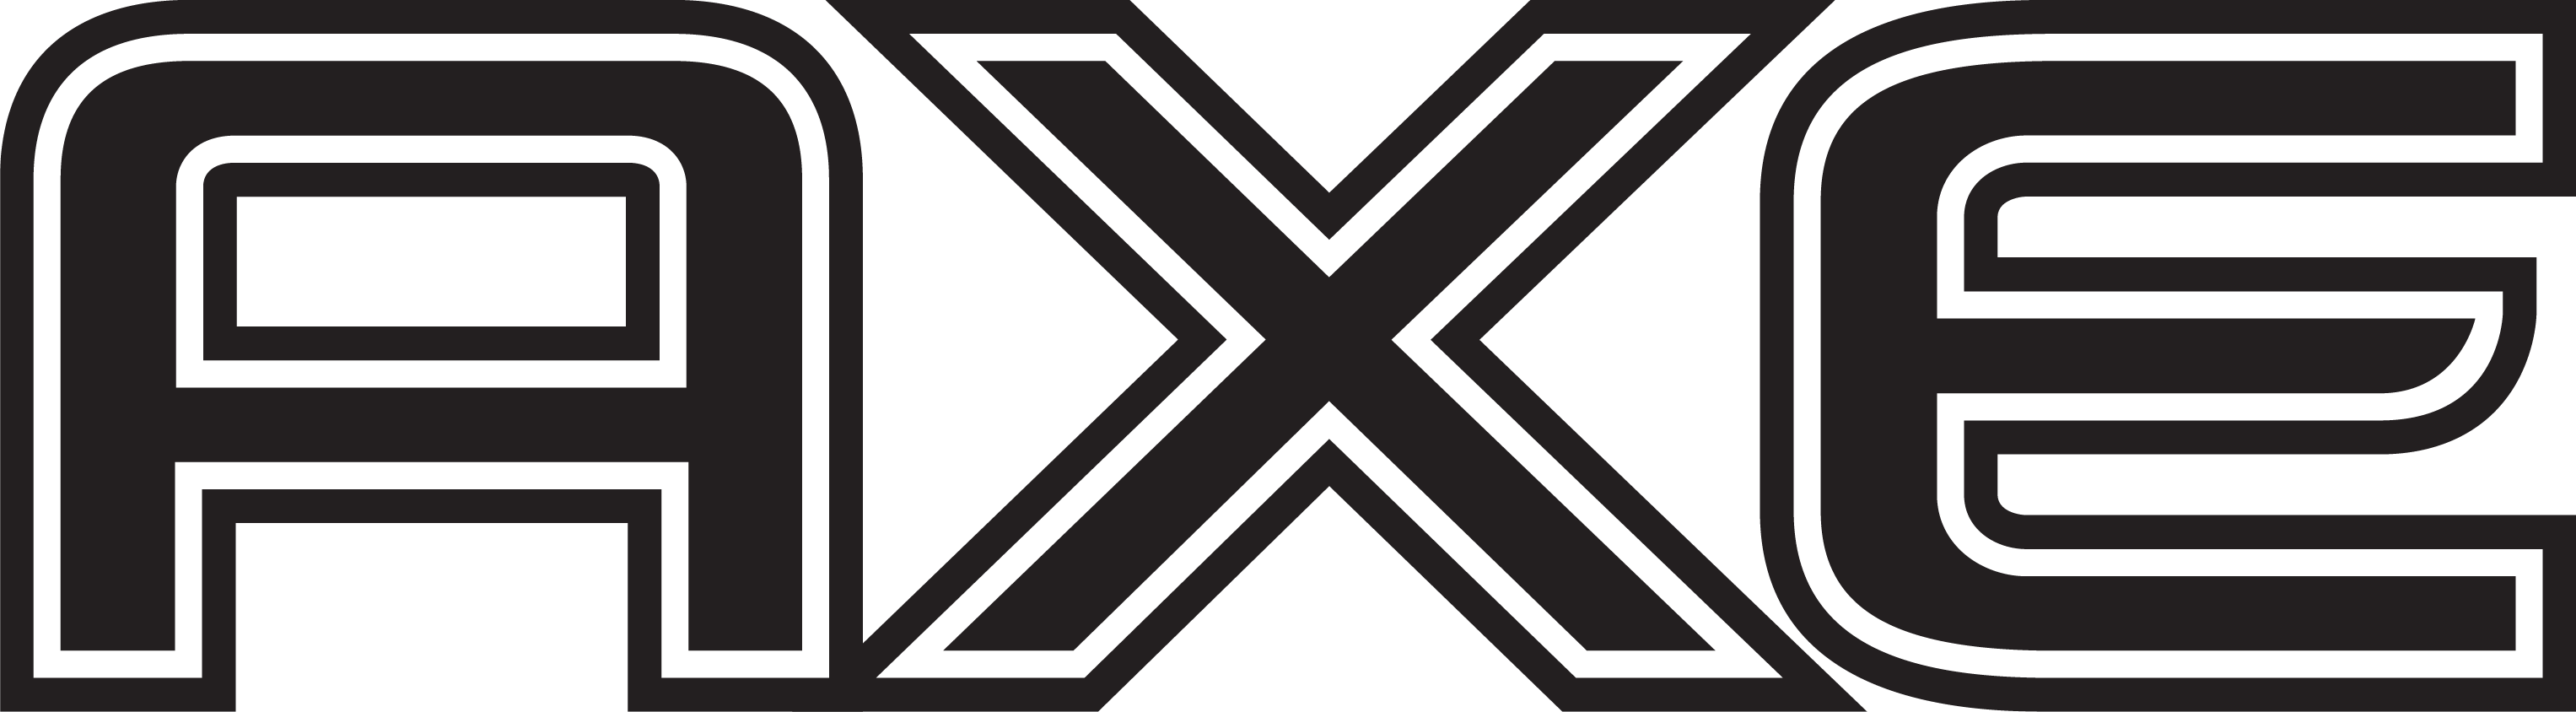 Axe Black Logo PNG - 105742